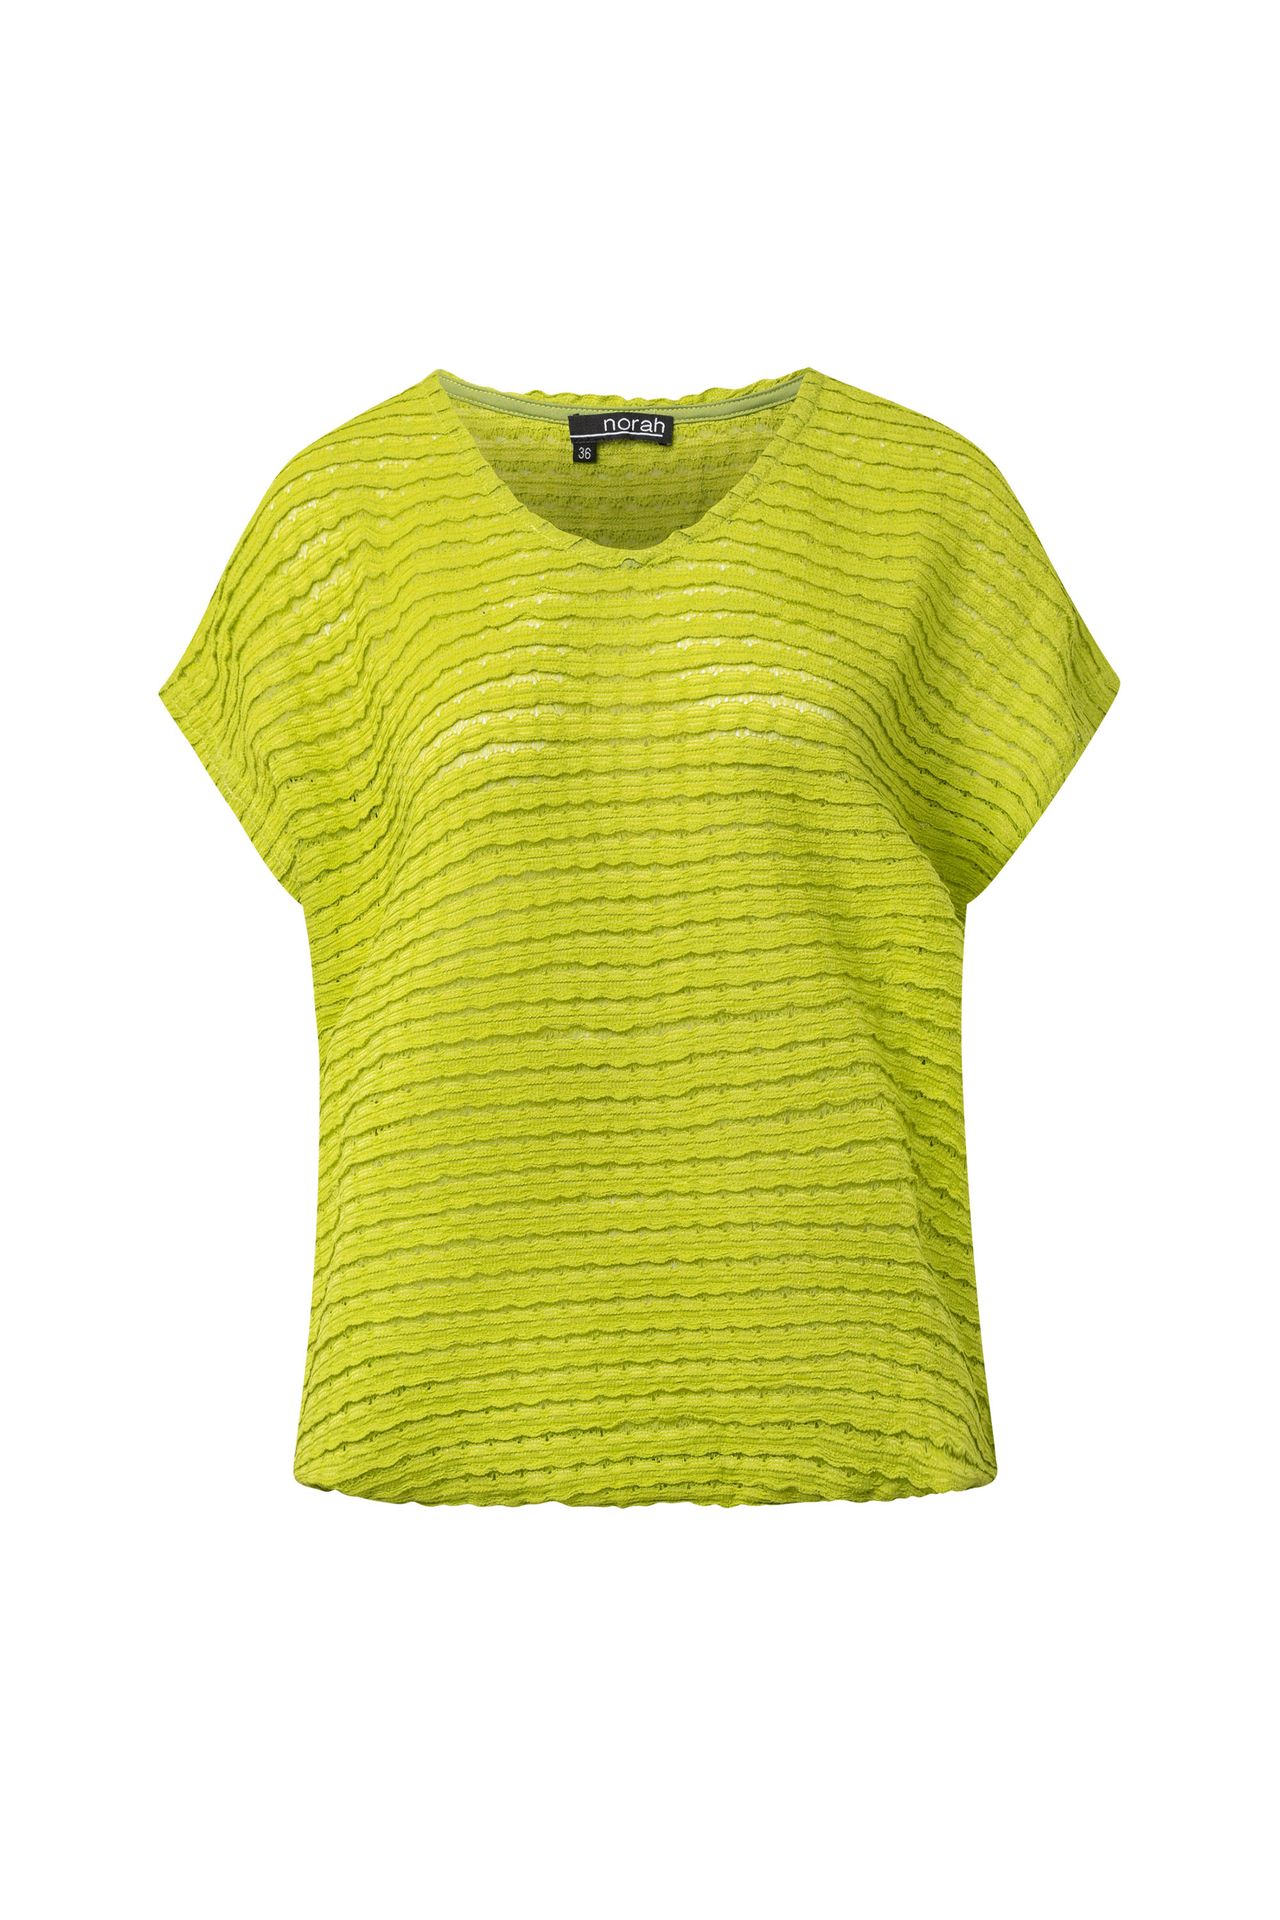 Norah Limegroen shirt lime 214669-506